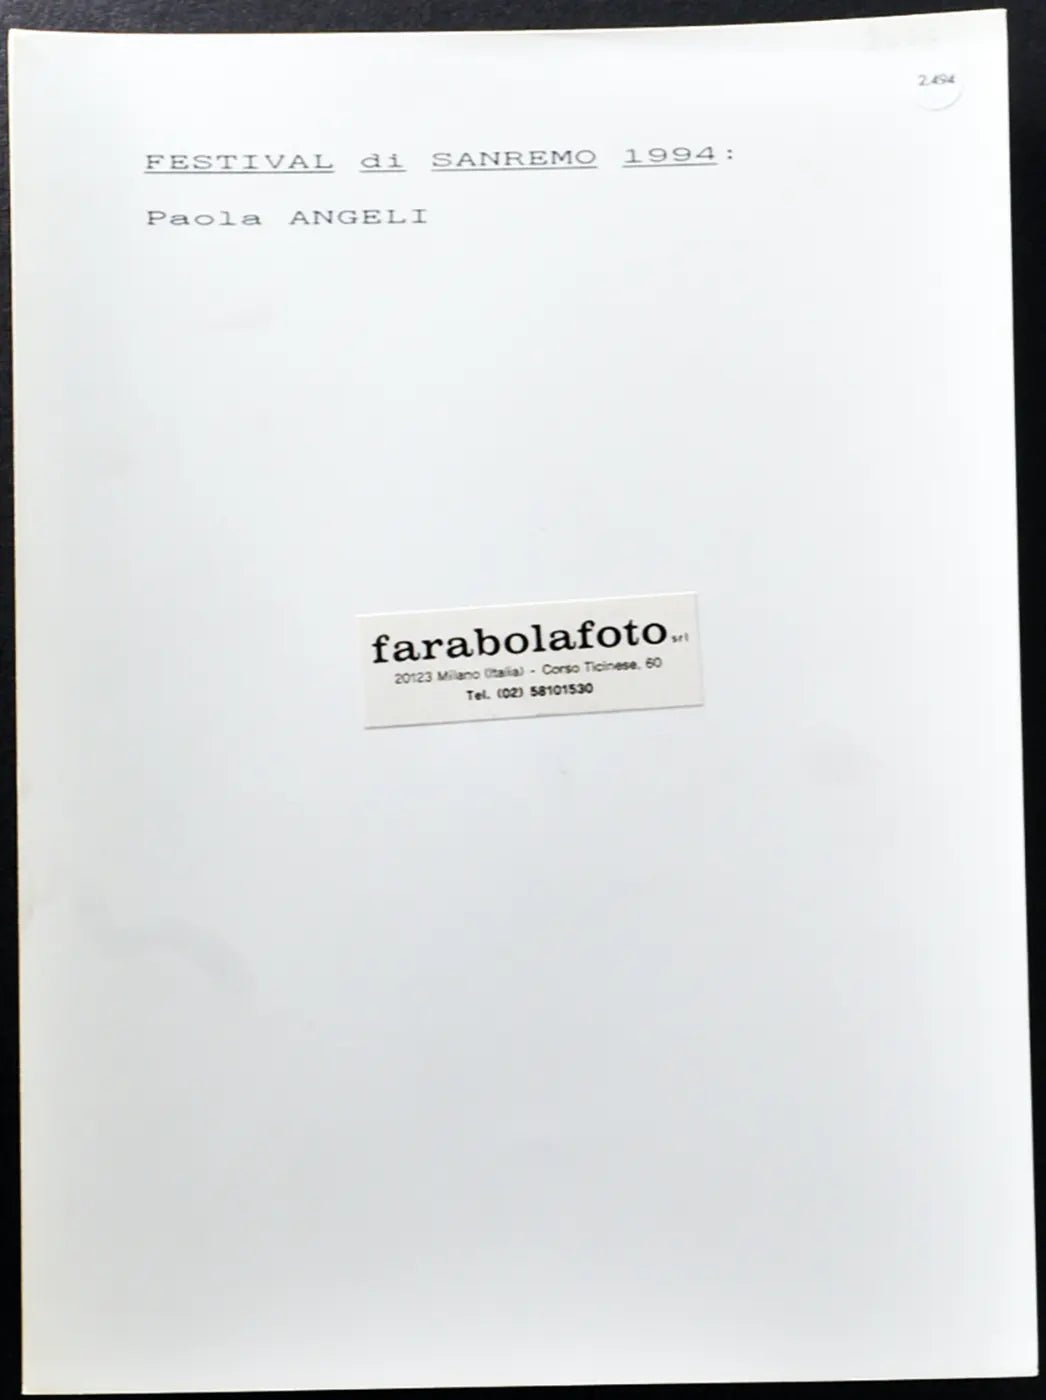 Festival di Sanremo 1994 Paola Angeli Ft 2494 - Stampa 24x18 cm - Farabola Stampa ai sali d'argento